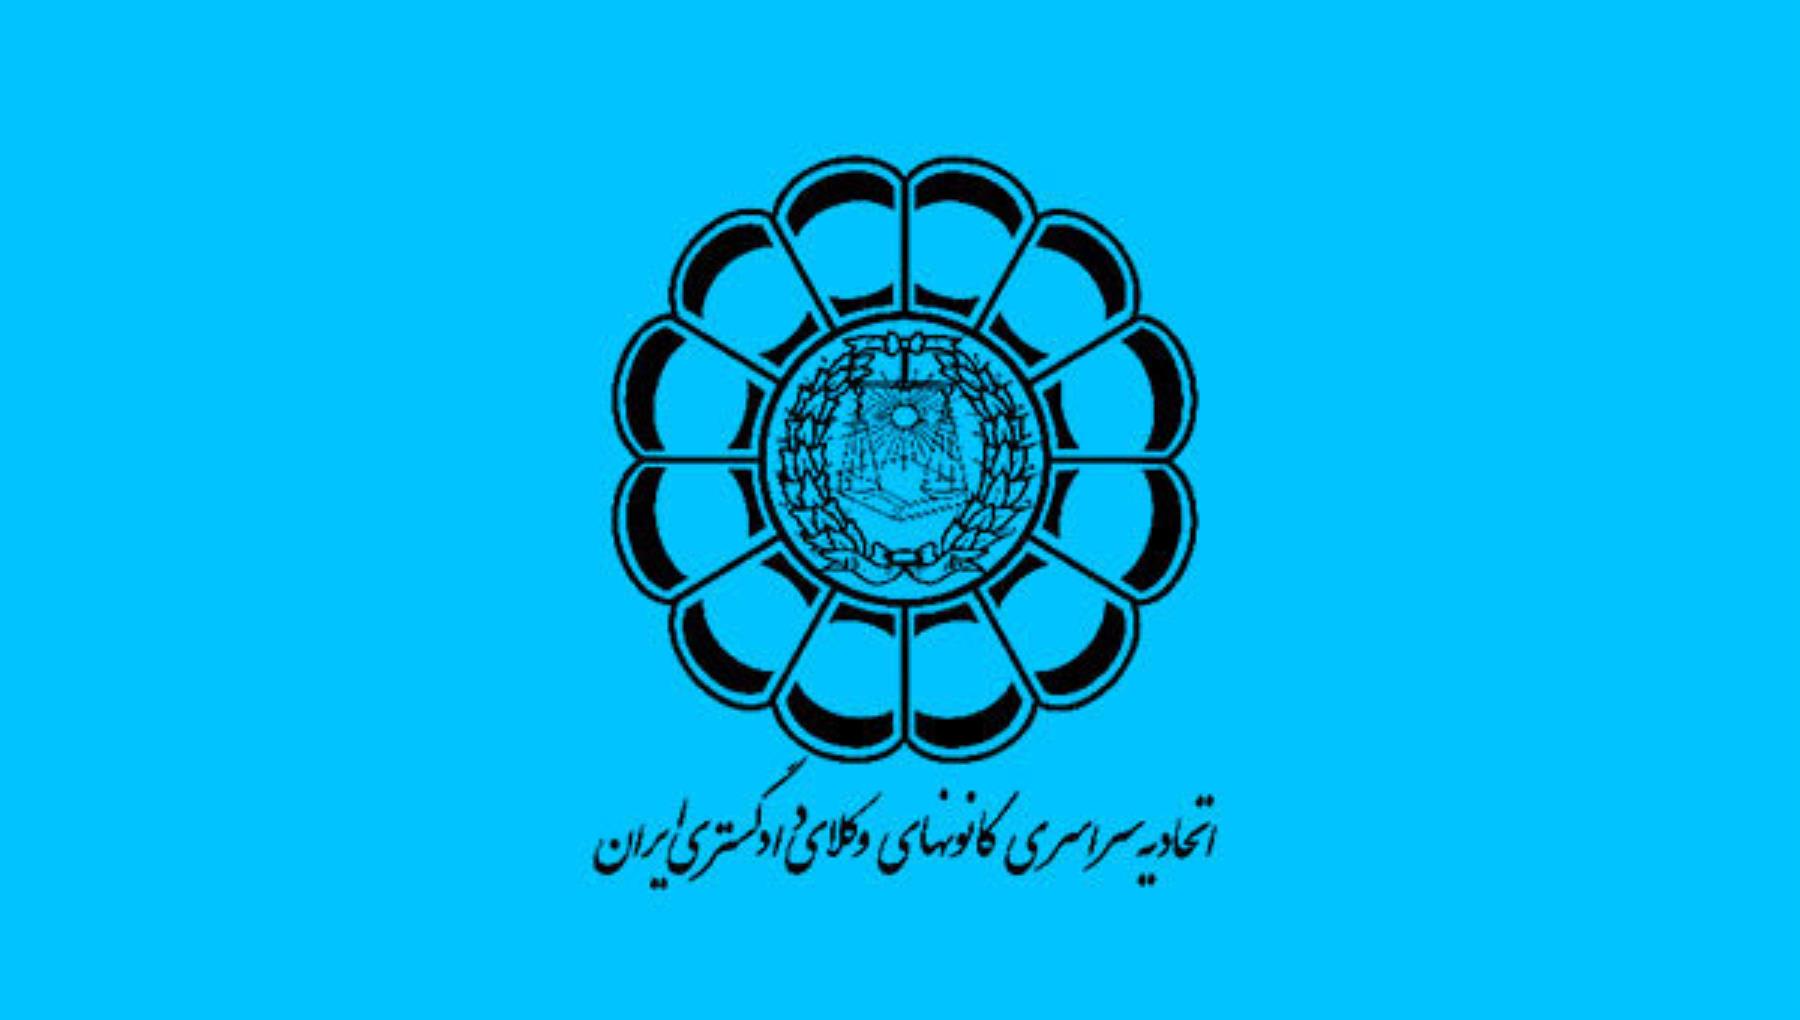 لگوی اتحادیه سراسری کانون های وکلای دادگستری ایران